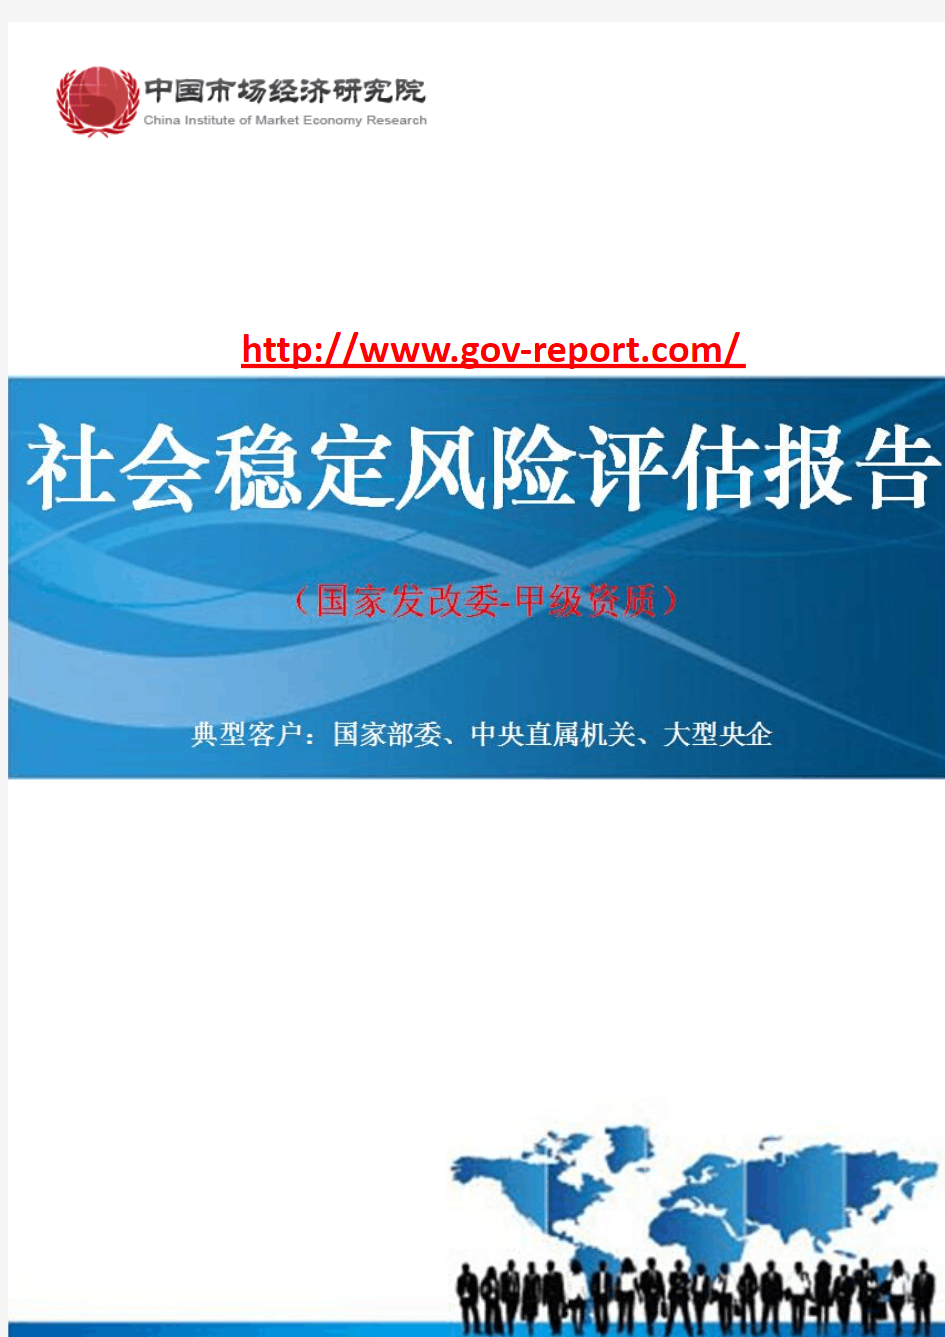 水库除险加固工程项目社会稳定风险评估报告(中国市场经济研究院-工程咨询-甲级资质)